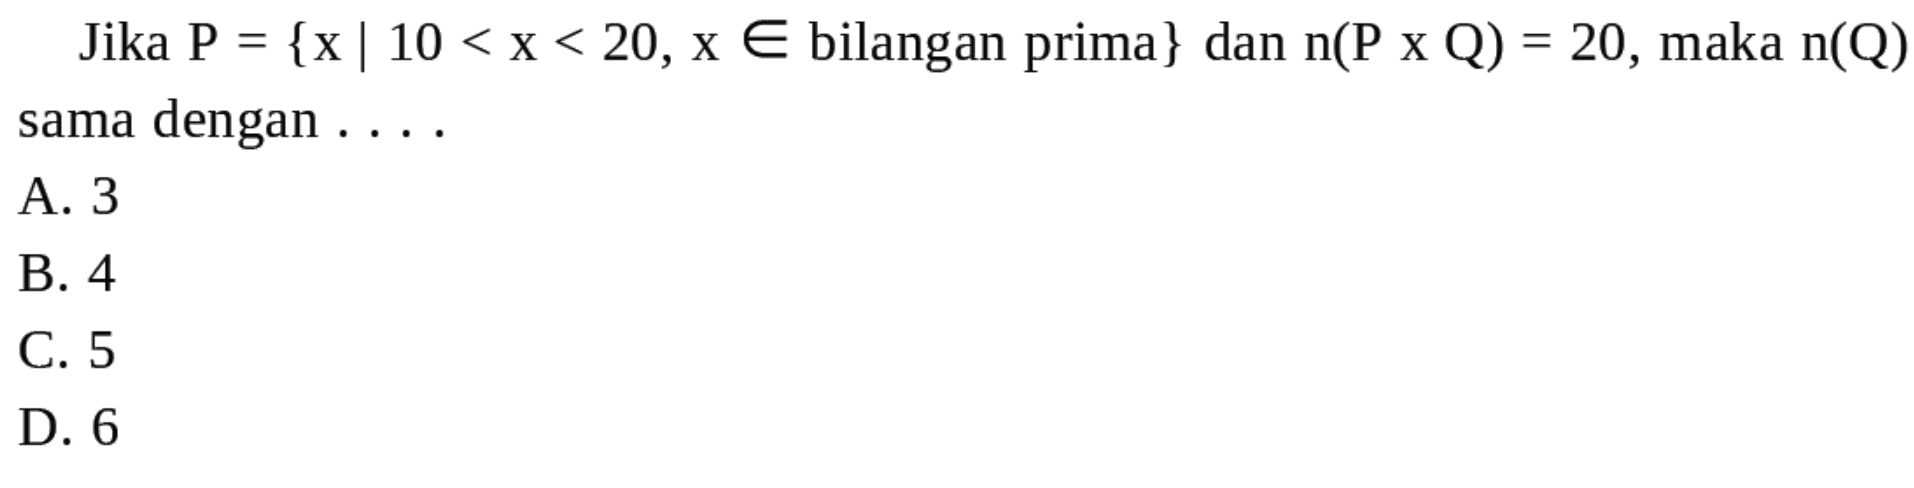 Jika P = {x | 10 < X < 20, x € bilangan prima} dan n(P x Q) = 20, maka n(Q) dengan sama A 3 B.4 C. 5 D. 6